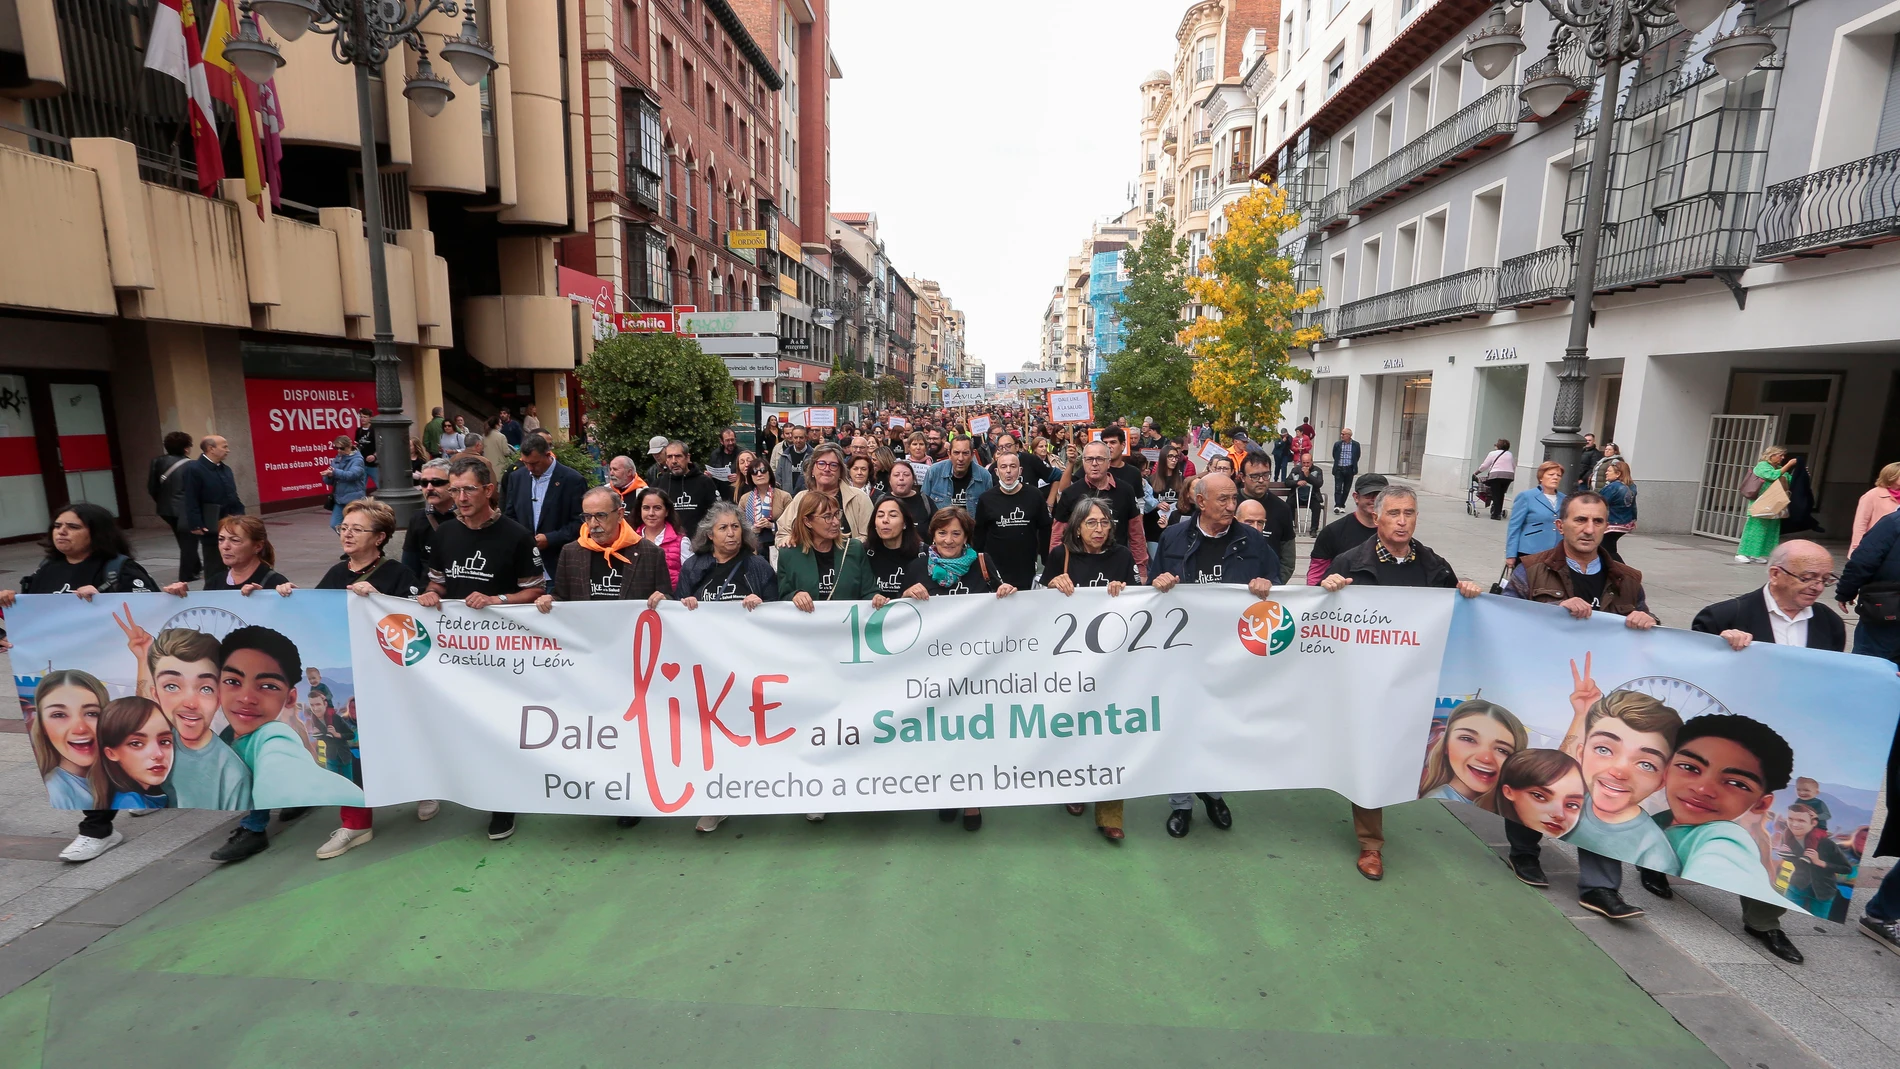 Manifestación y acto institucional de celebración del Día Mundial de la Salud Mental, organizado por la Federación Salud Mental Castilla y León